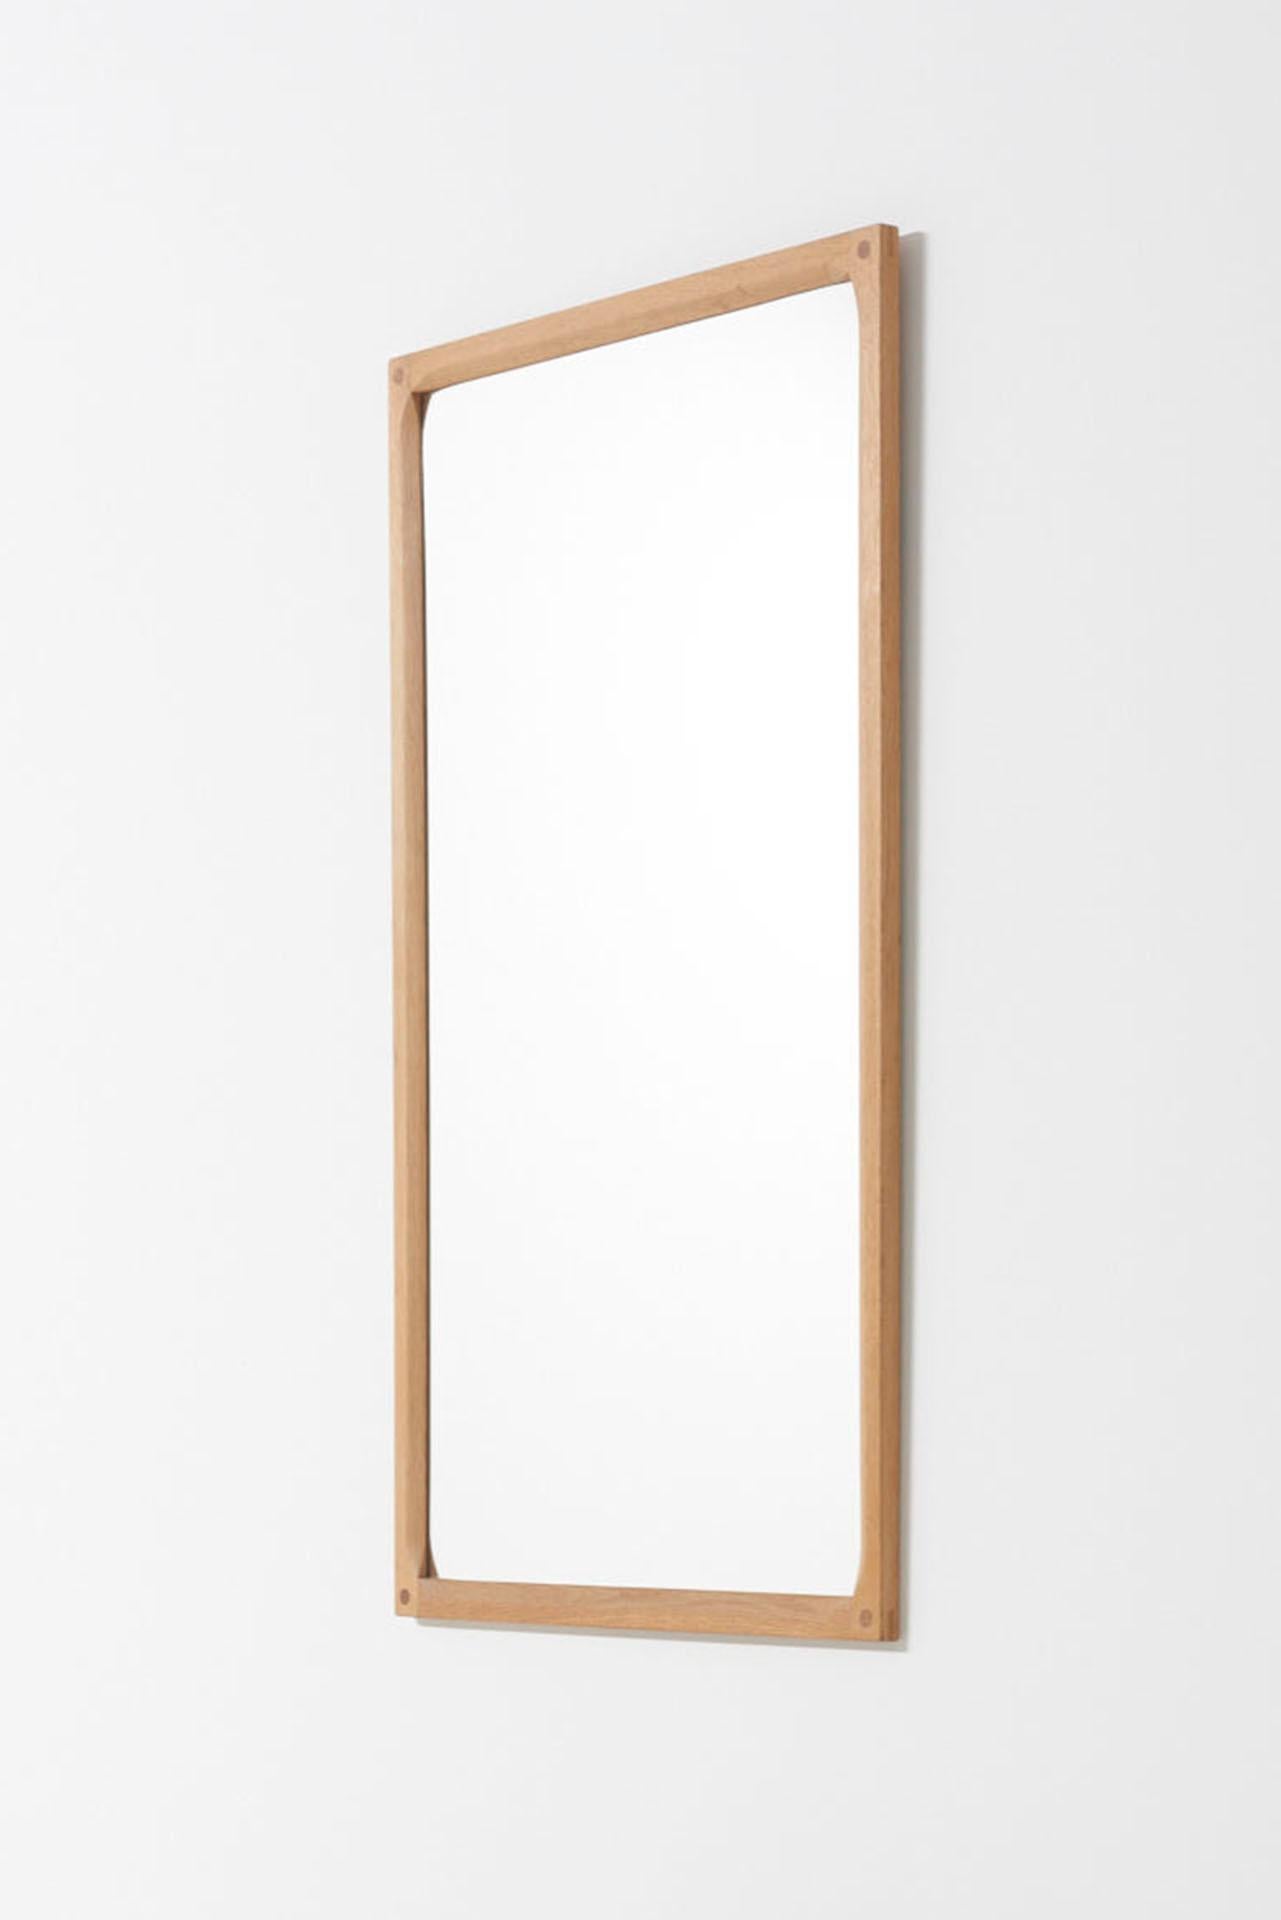 Mid-20th Century Mirror with Oak Frame, Kai Kristiansen